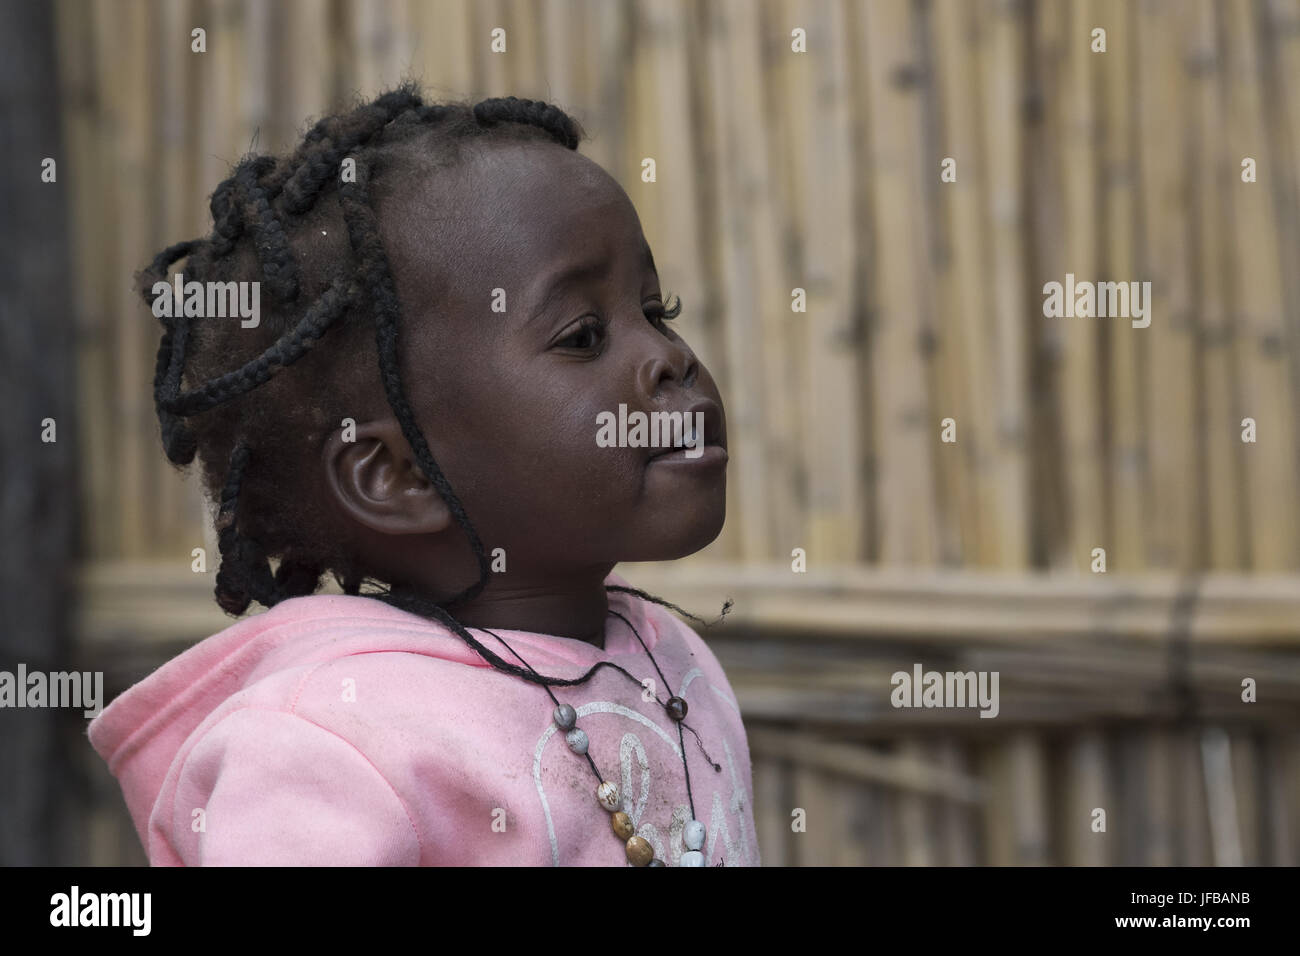 Ritratto, giovane ragazza africana, app. 3 anni Foto Stock